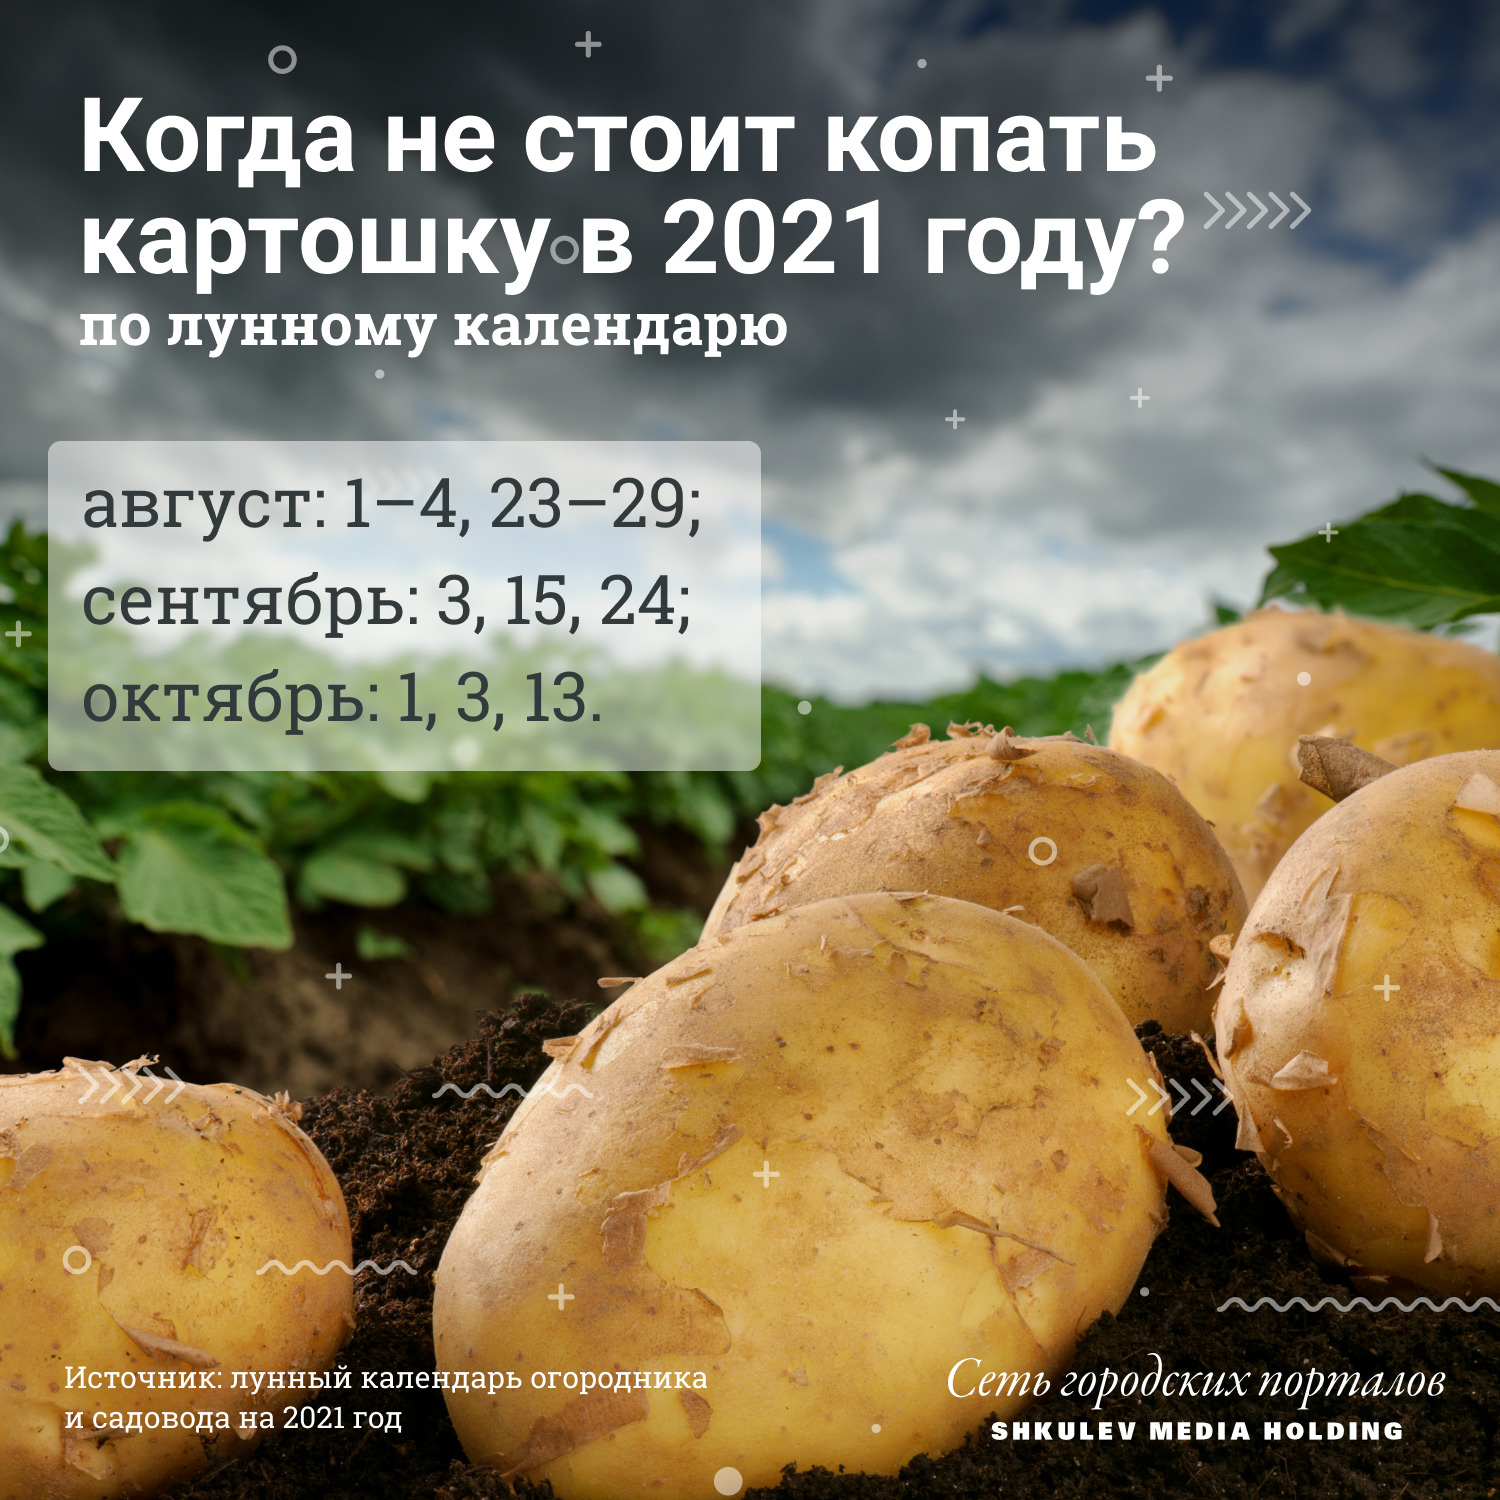 Неблагоприятные даты для выкапывания картошки в 2021 году, согласно лунному календарю